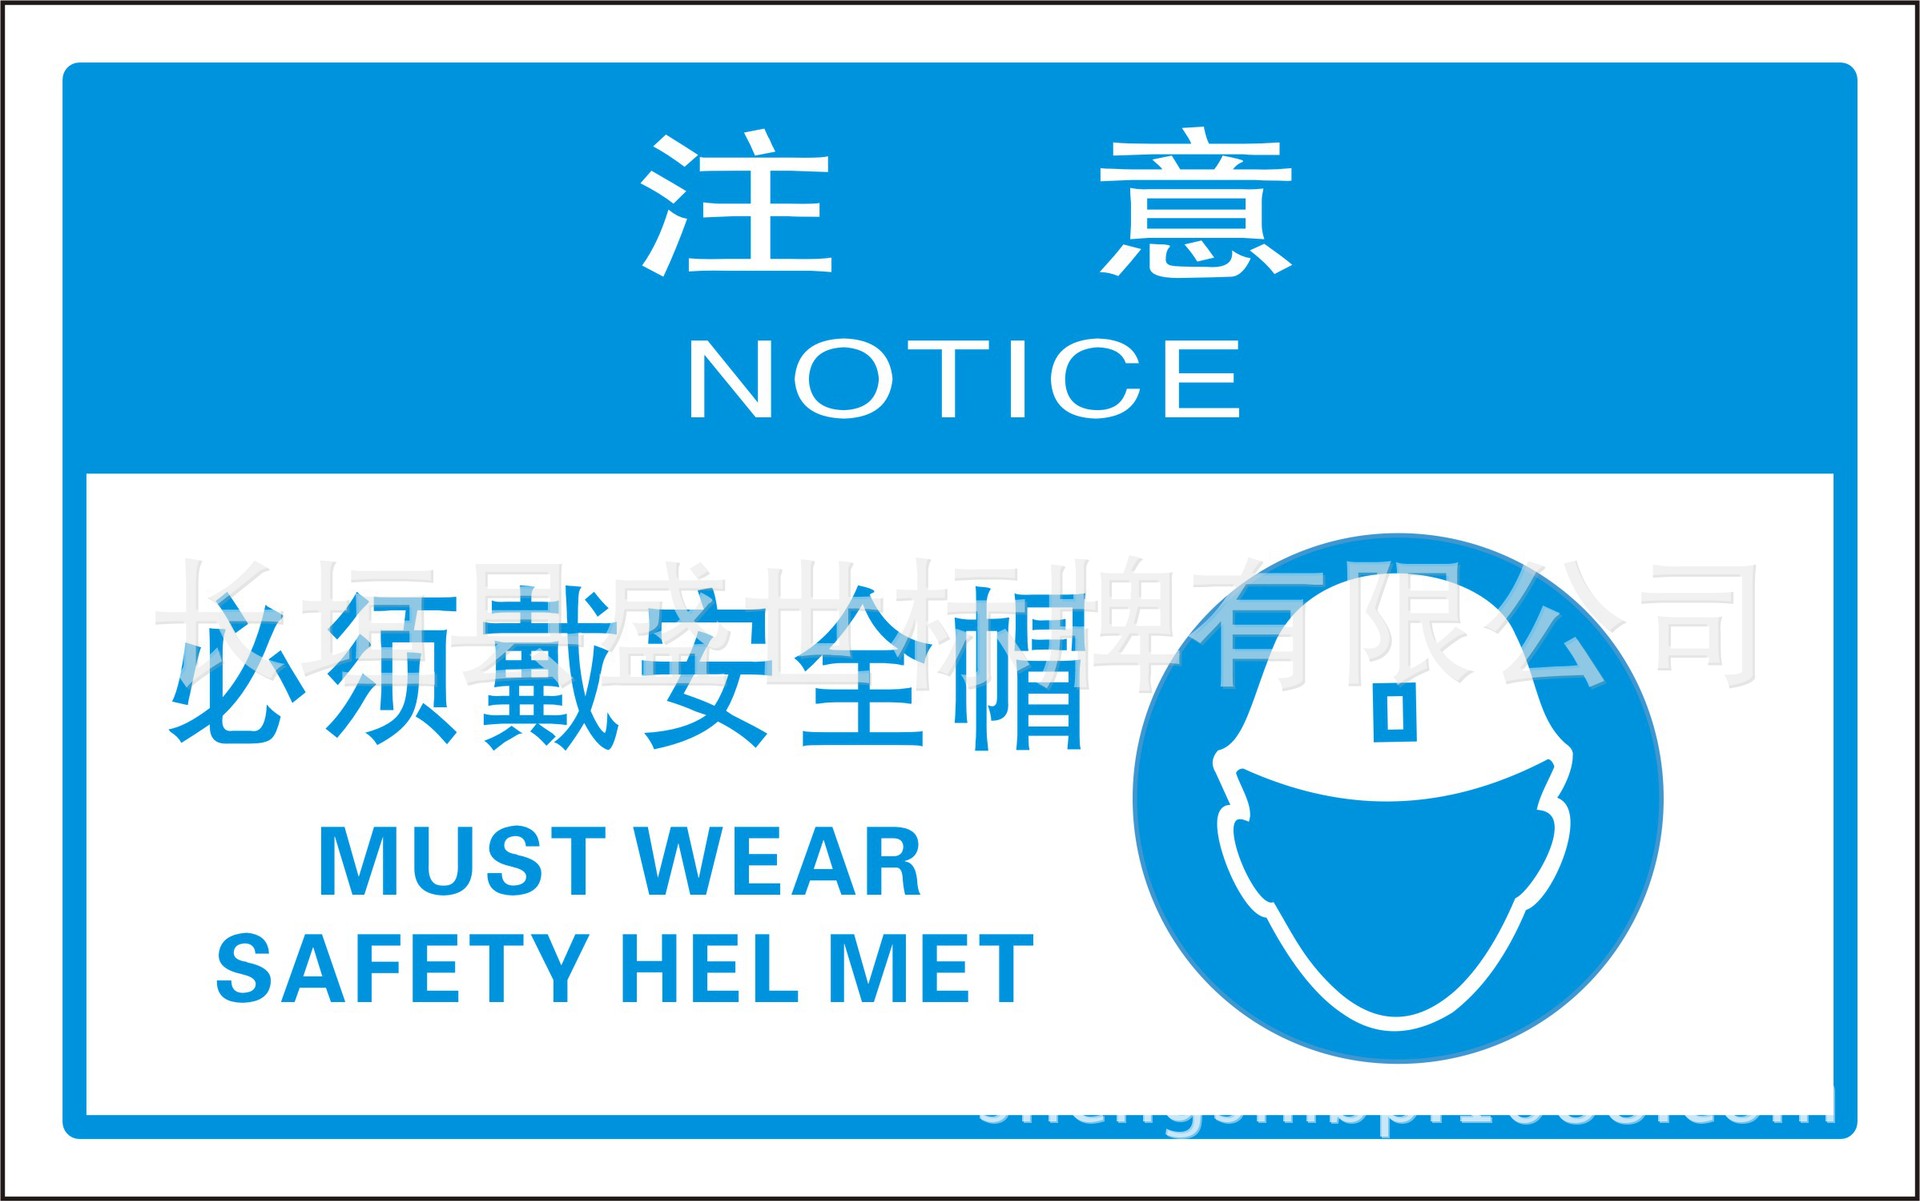 【煤矿标准化】注意 必须戴安全帽